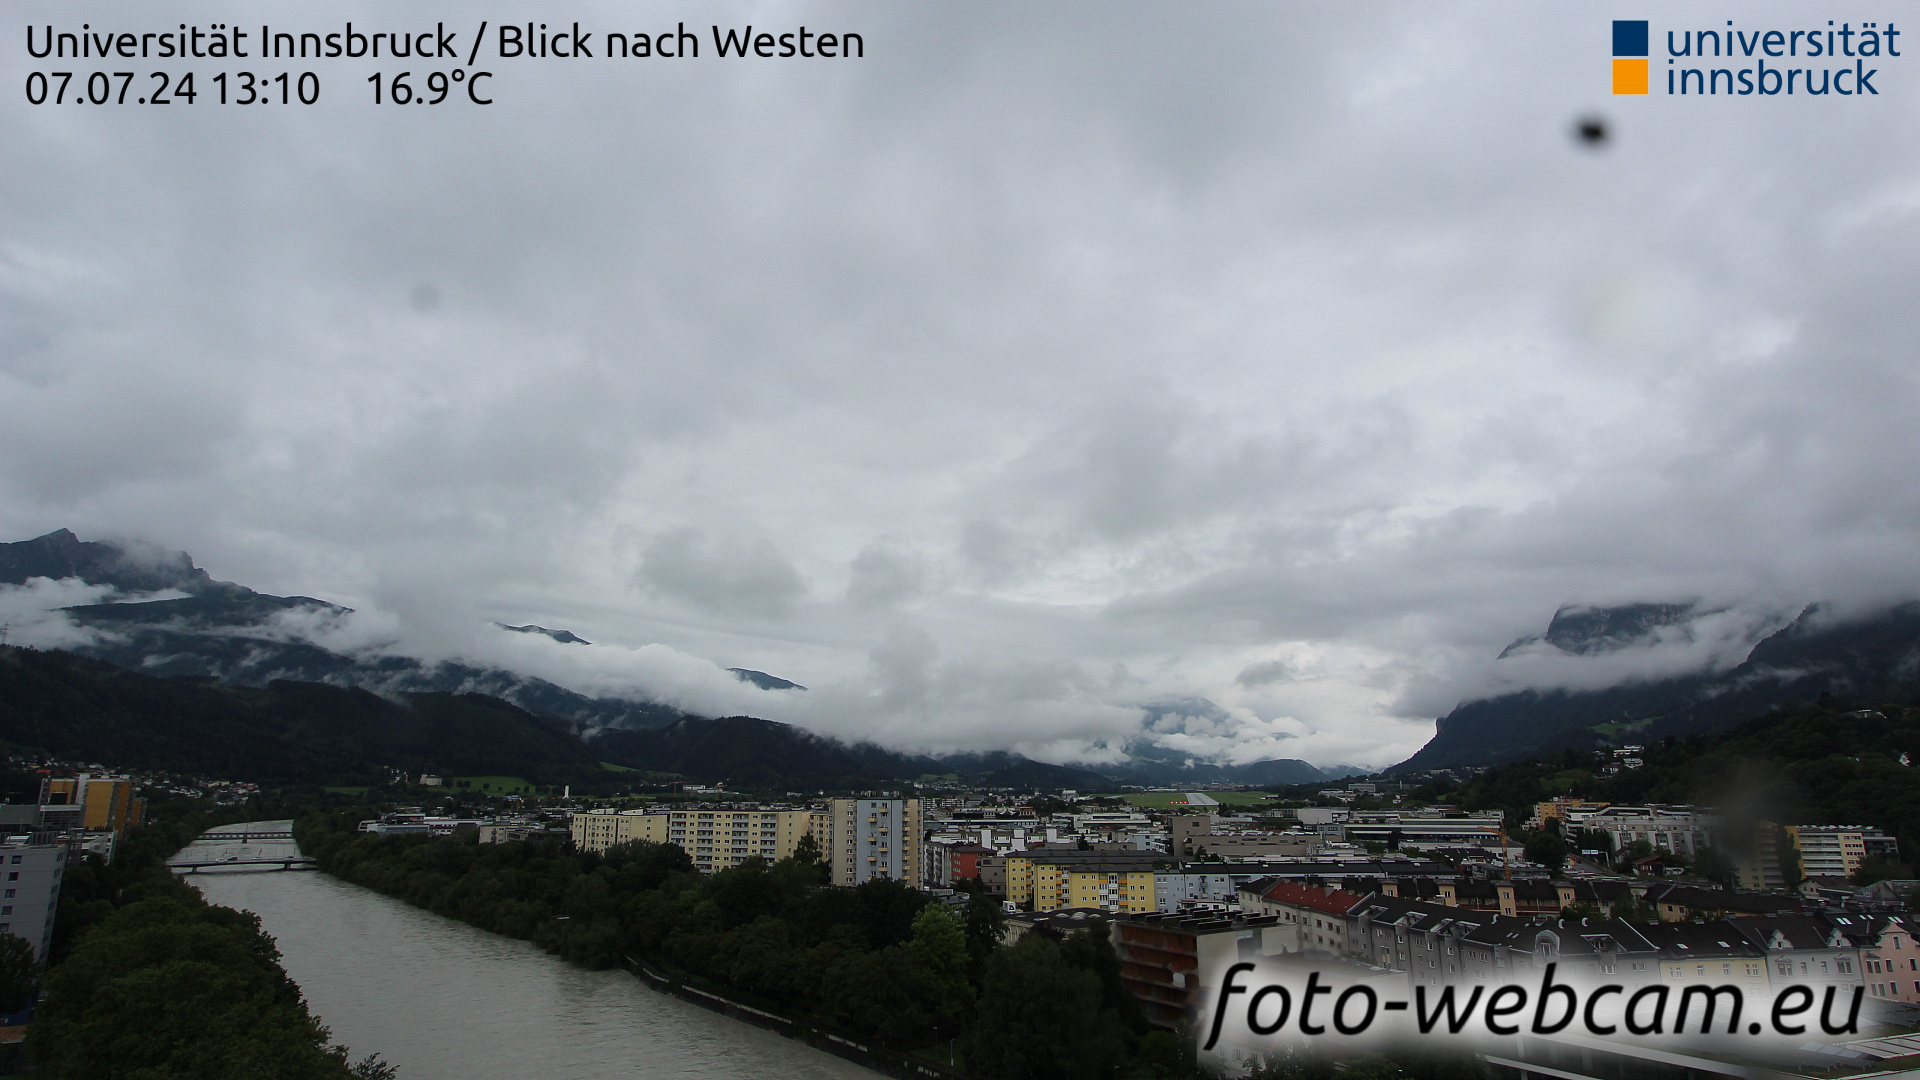 Innsbruck Thu. 13:17